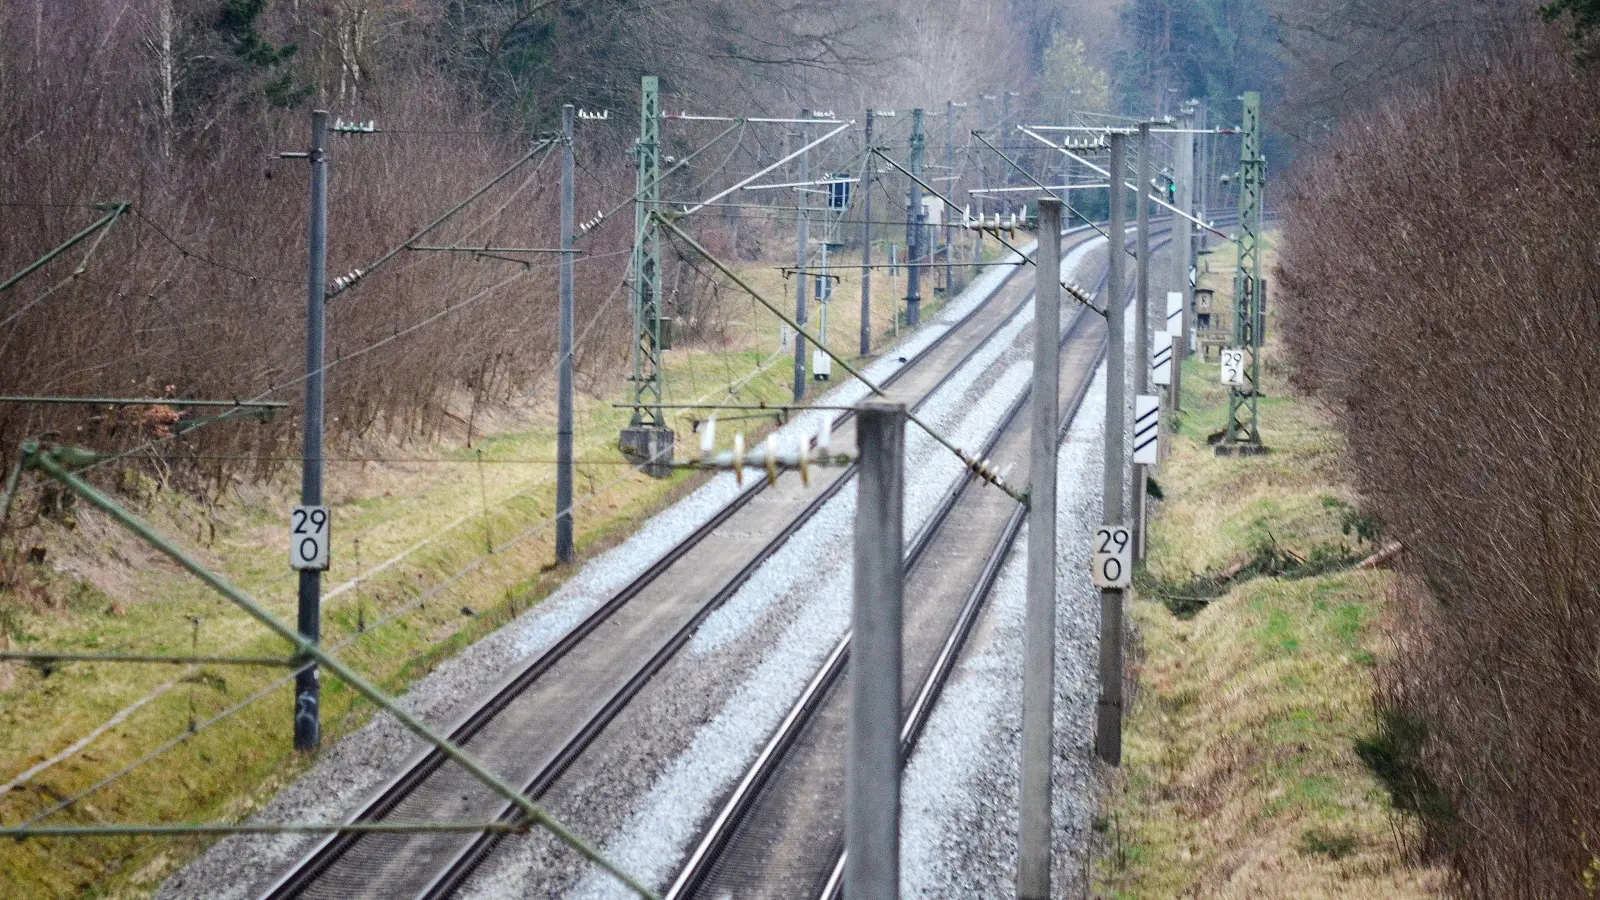 Tod am Kilometer 29: Auf diesem Streckenabschnitt zwischen Heilsbronn und Petersaurach wurden eine schwerverletzte Frau und eine Leiche entdeckt. (Foto: Johannes Hirschlach)